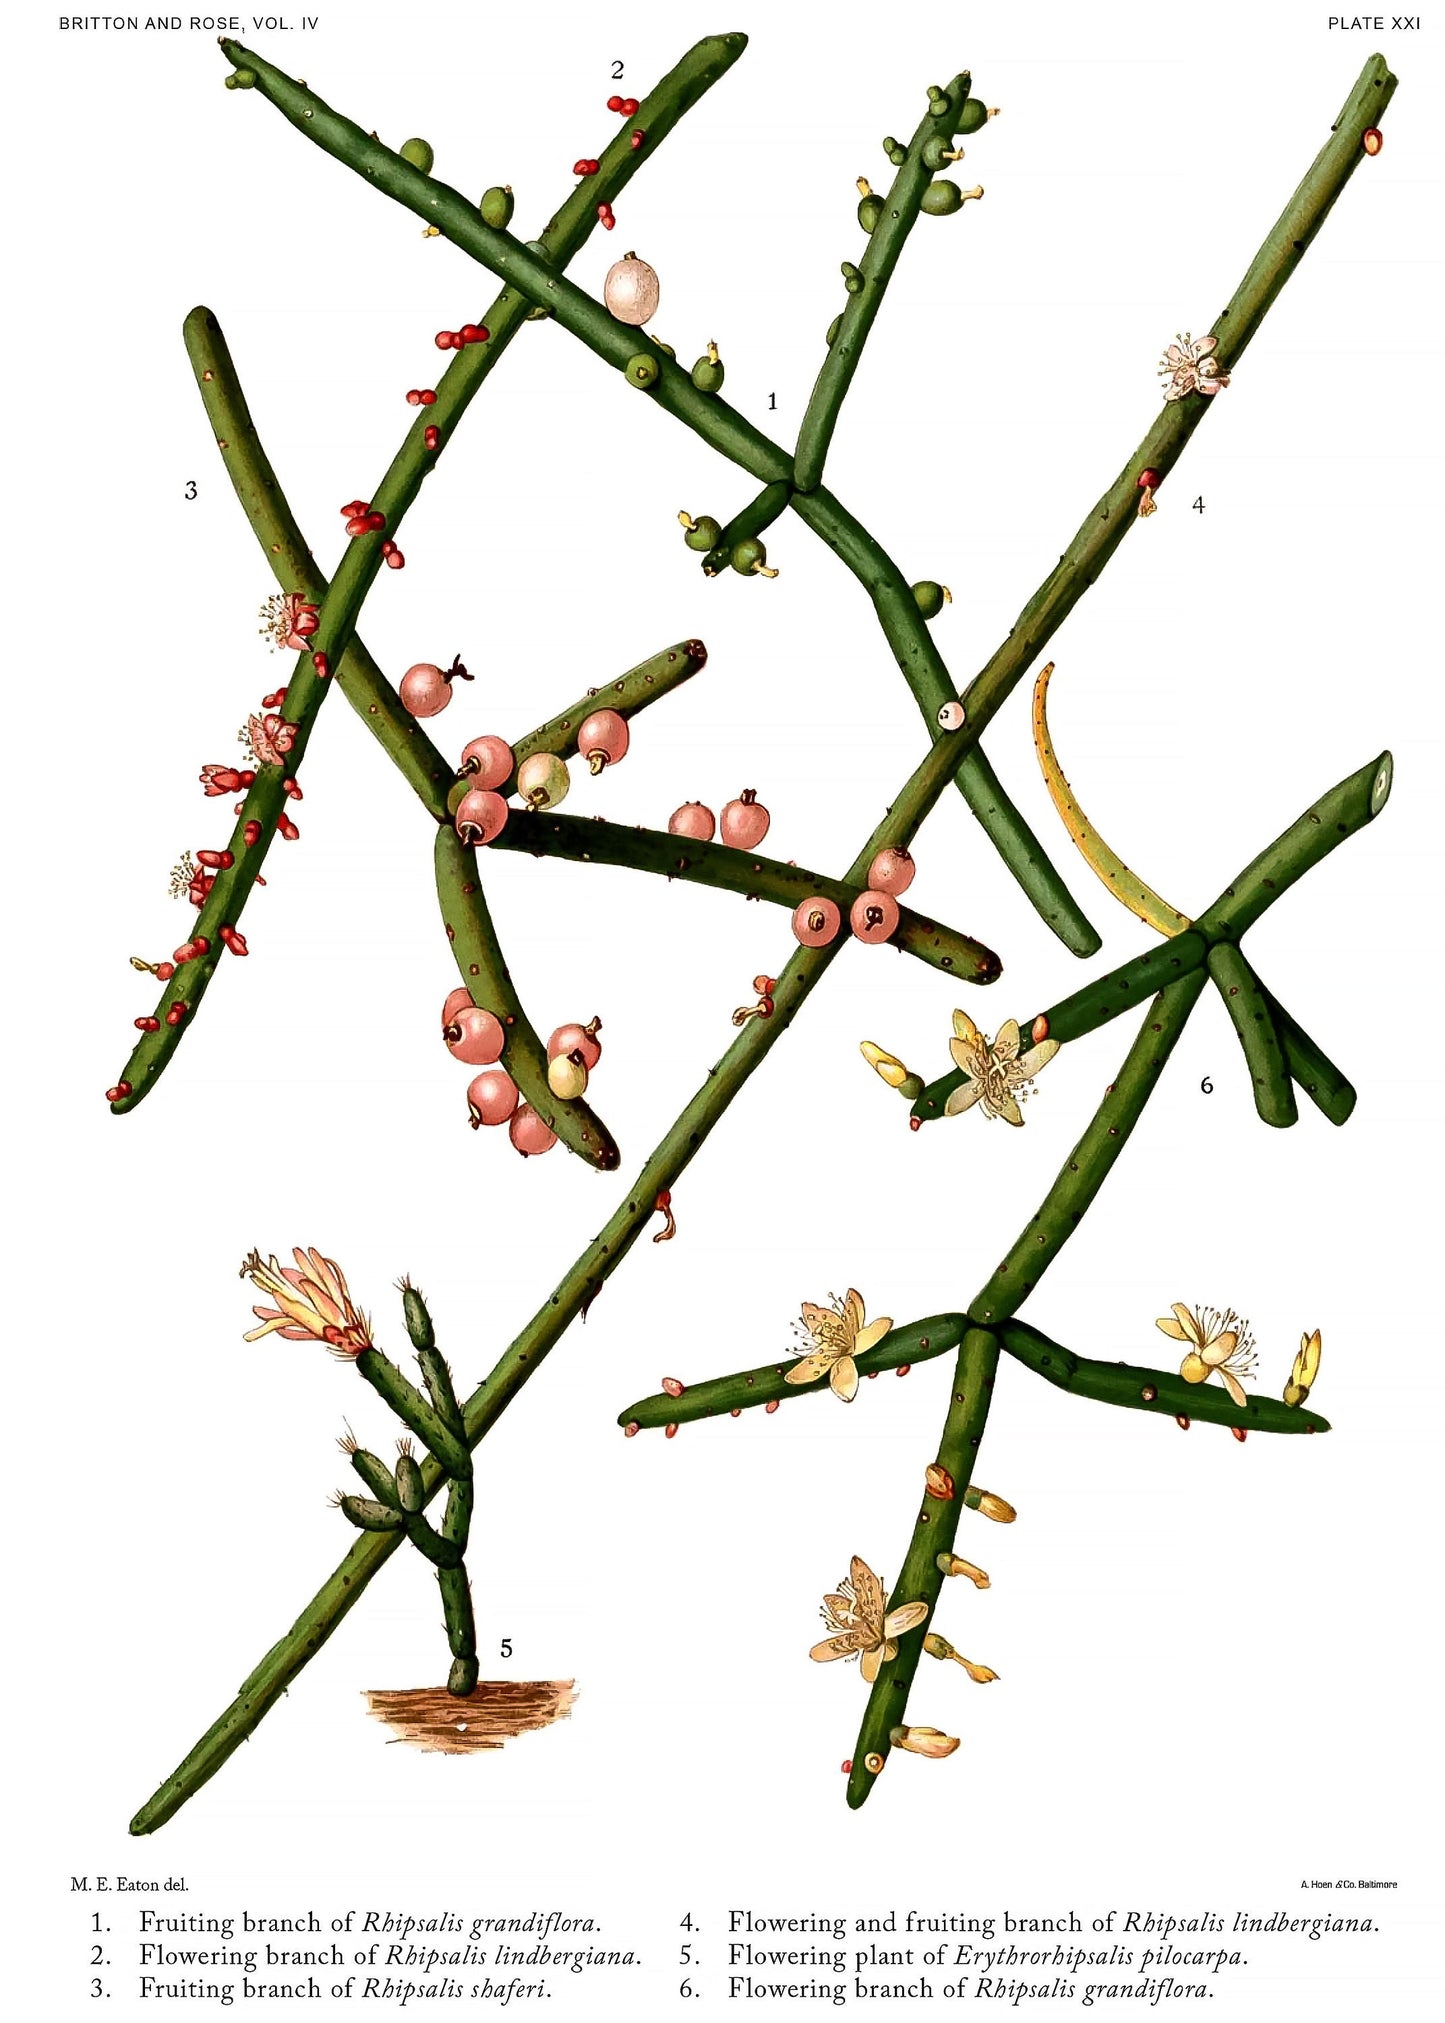 The Cactaceae Set 1 [55 Images]